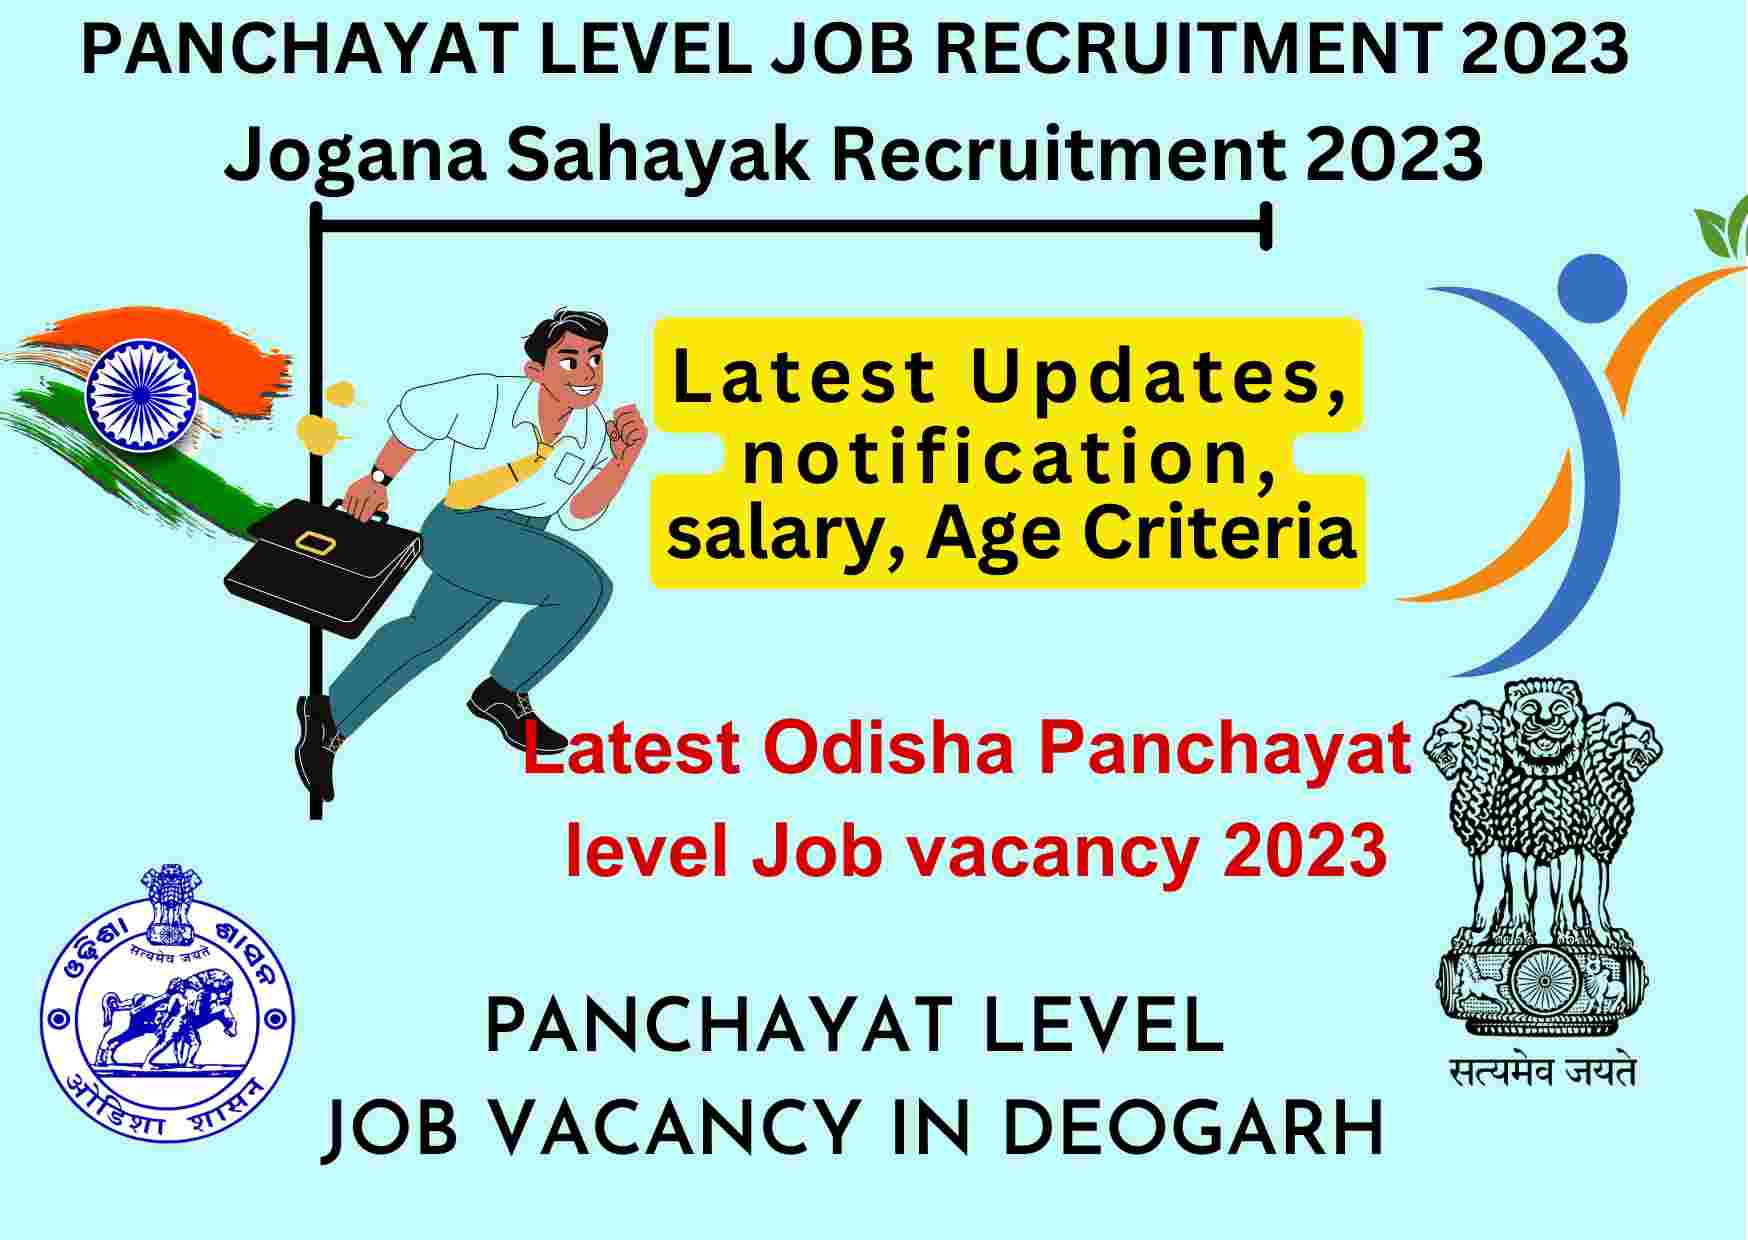 Panchayat level Job vacancy in Odisha 2023